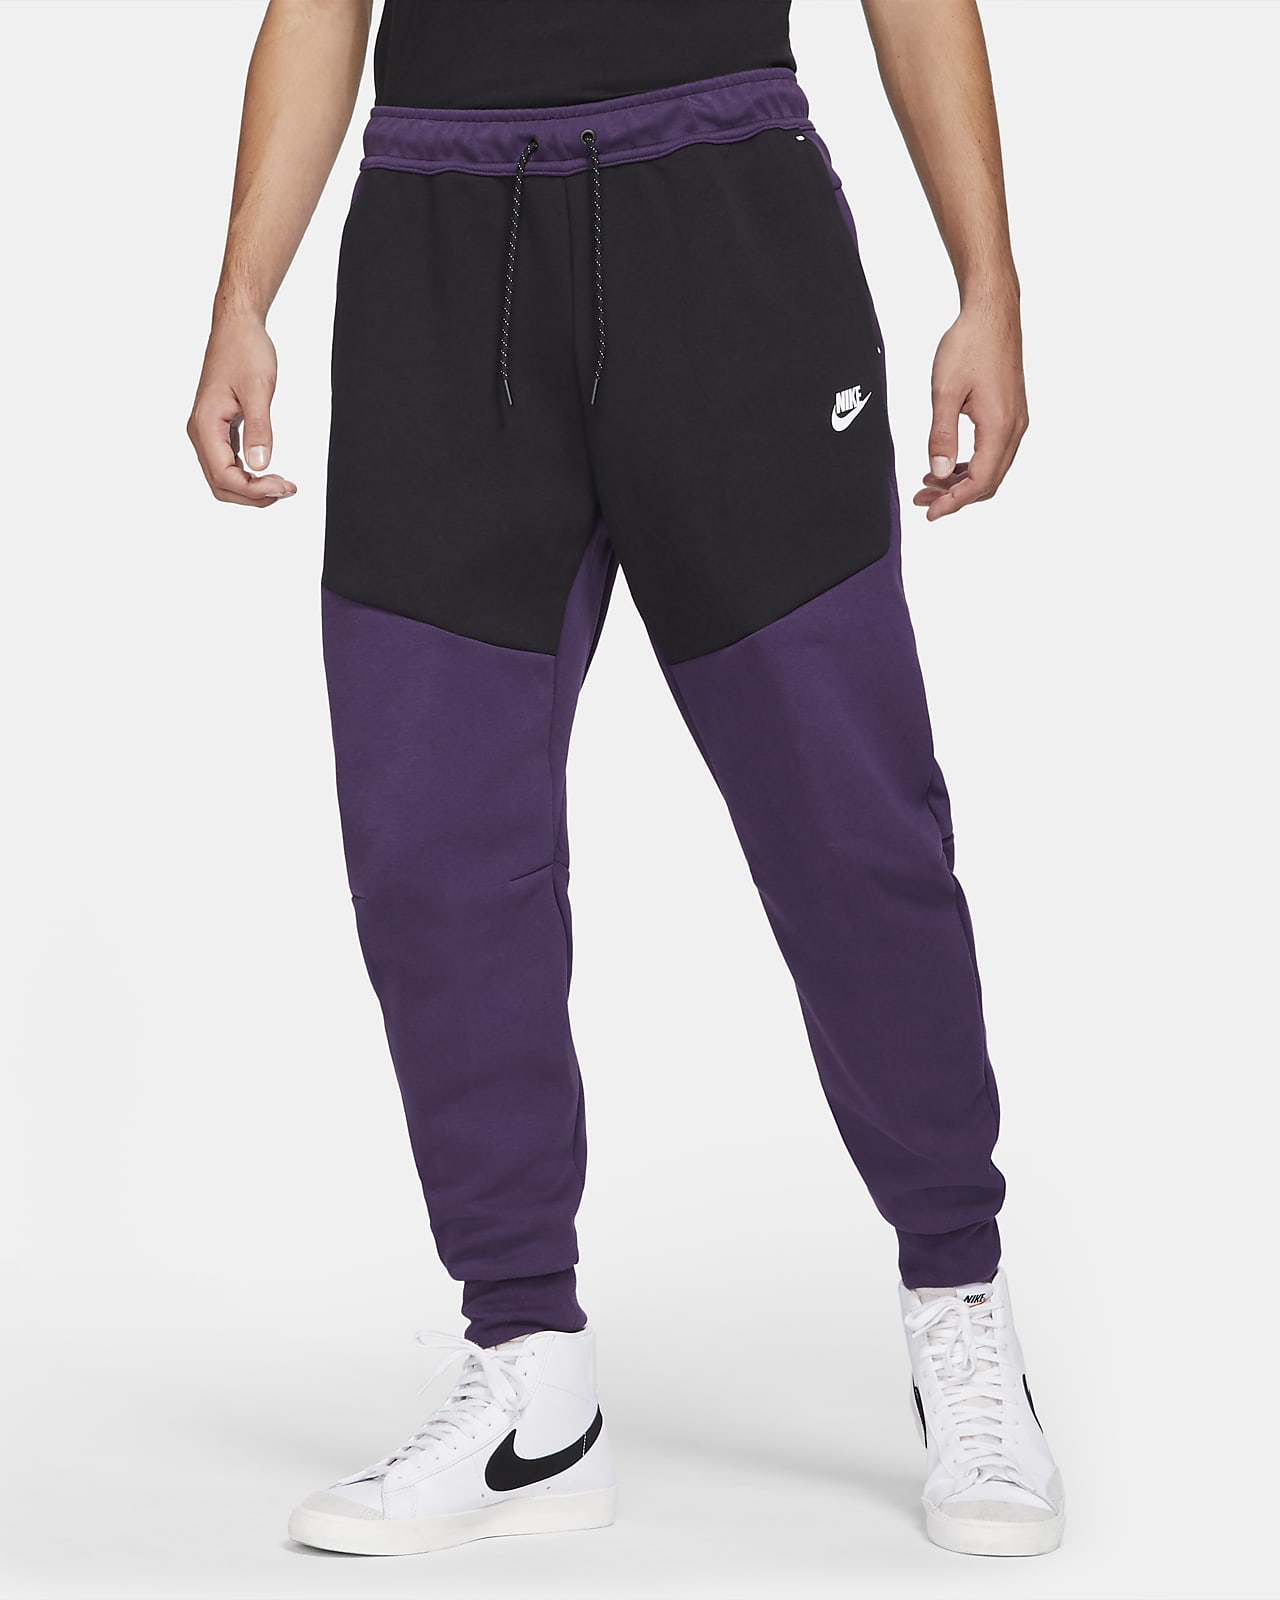 mens purple nike joggers